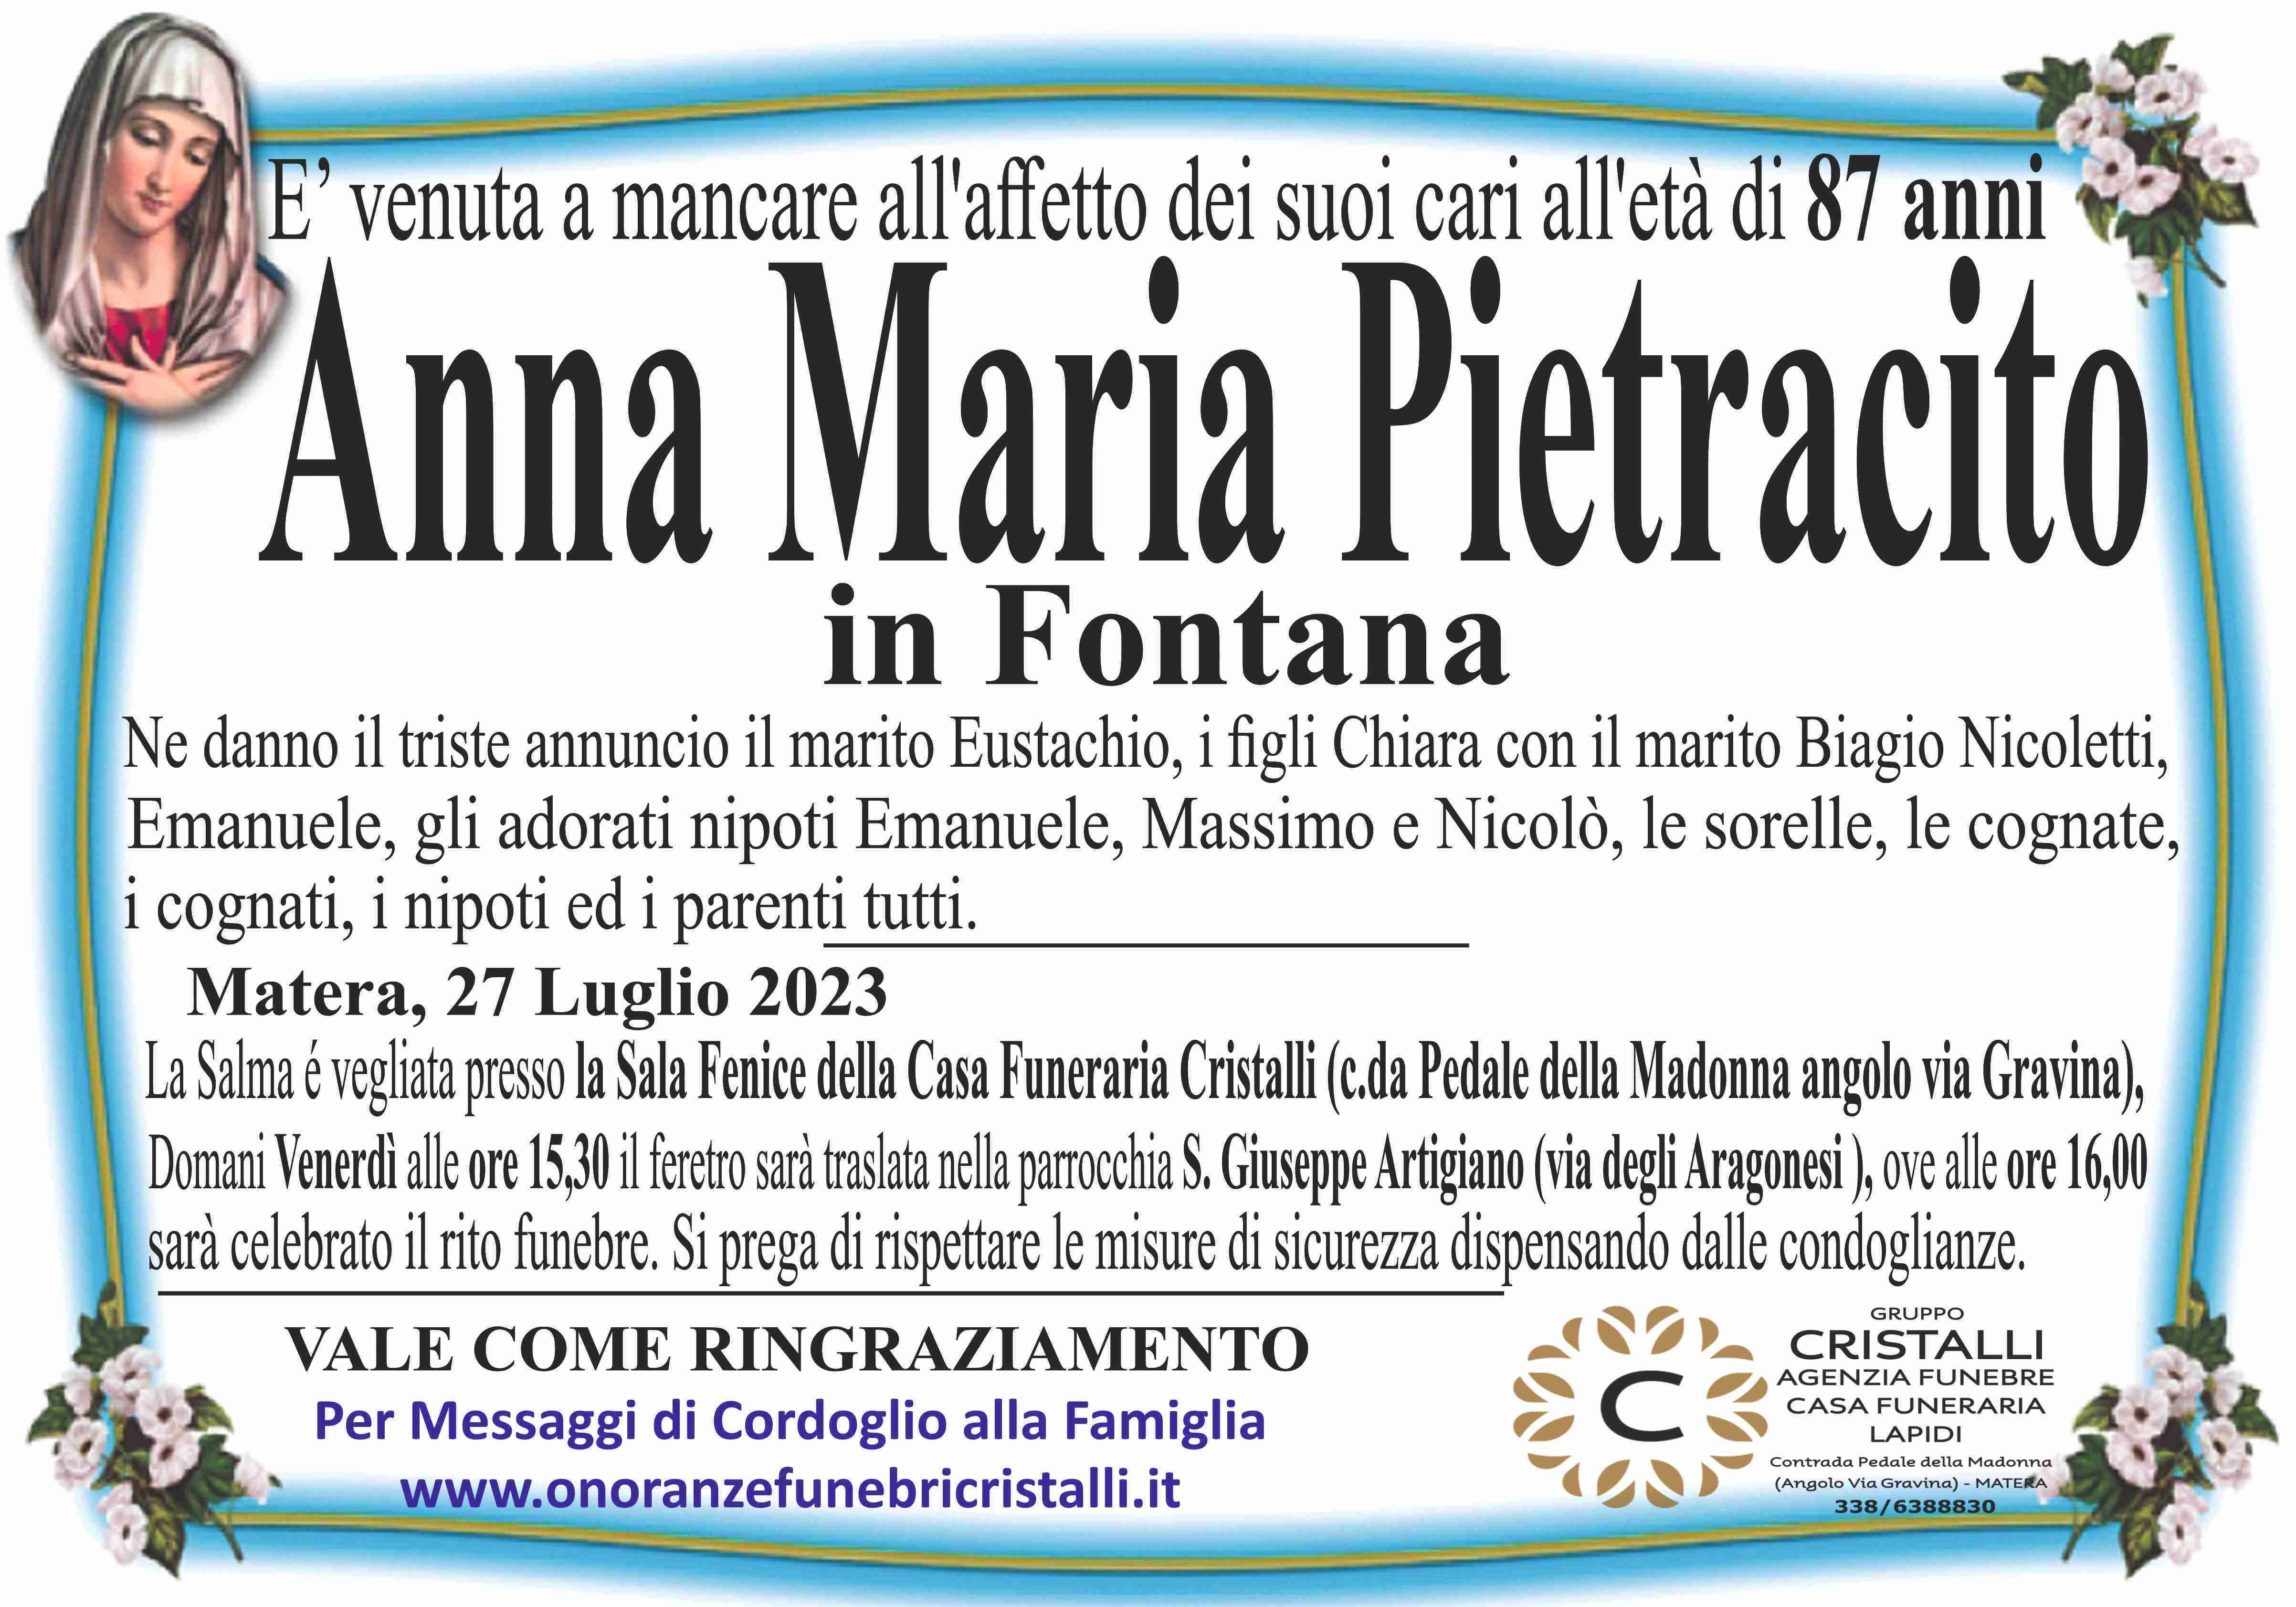 Anna Maria Pietracito